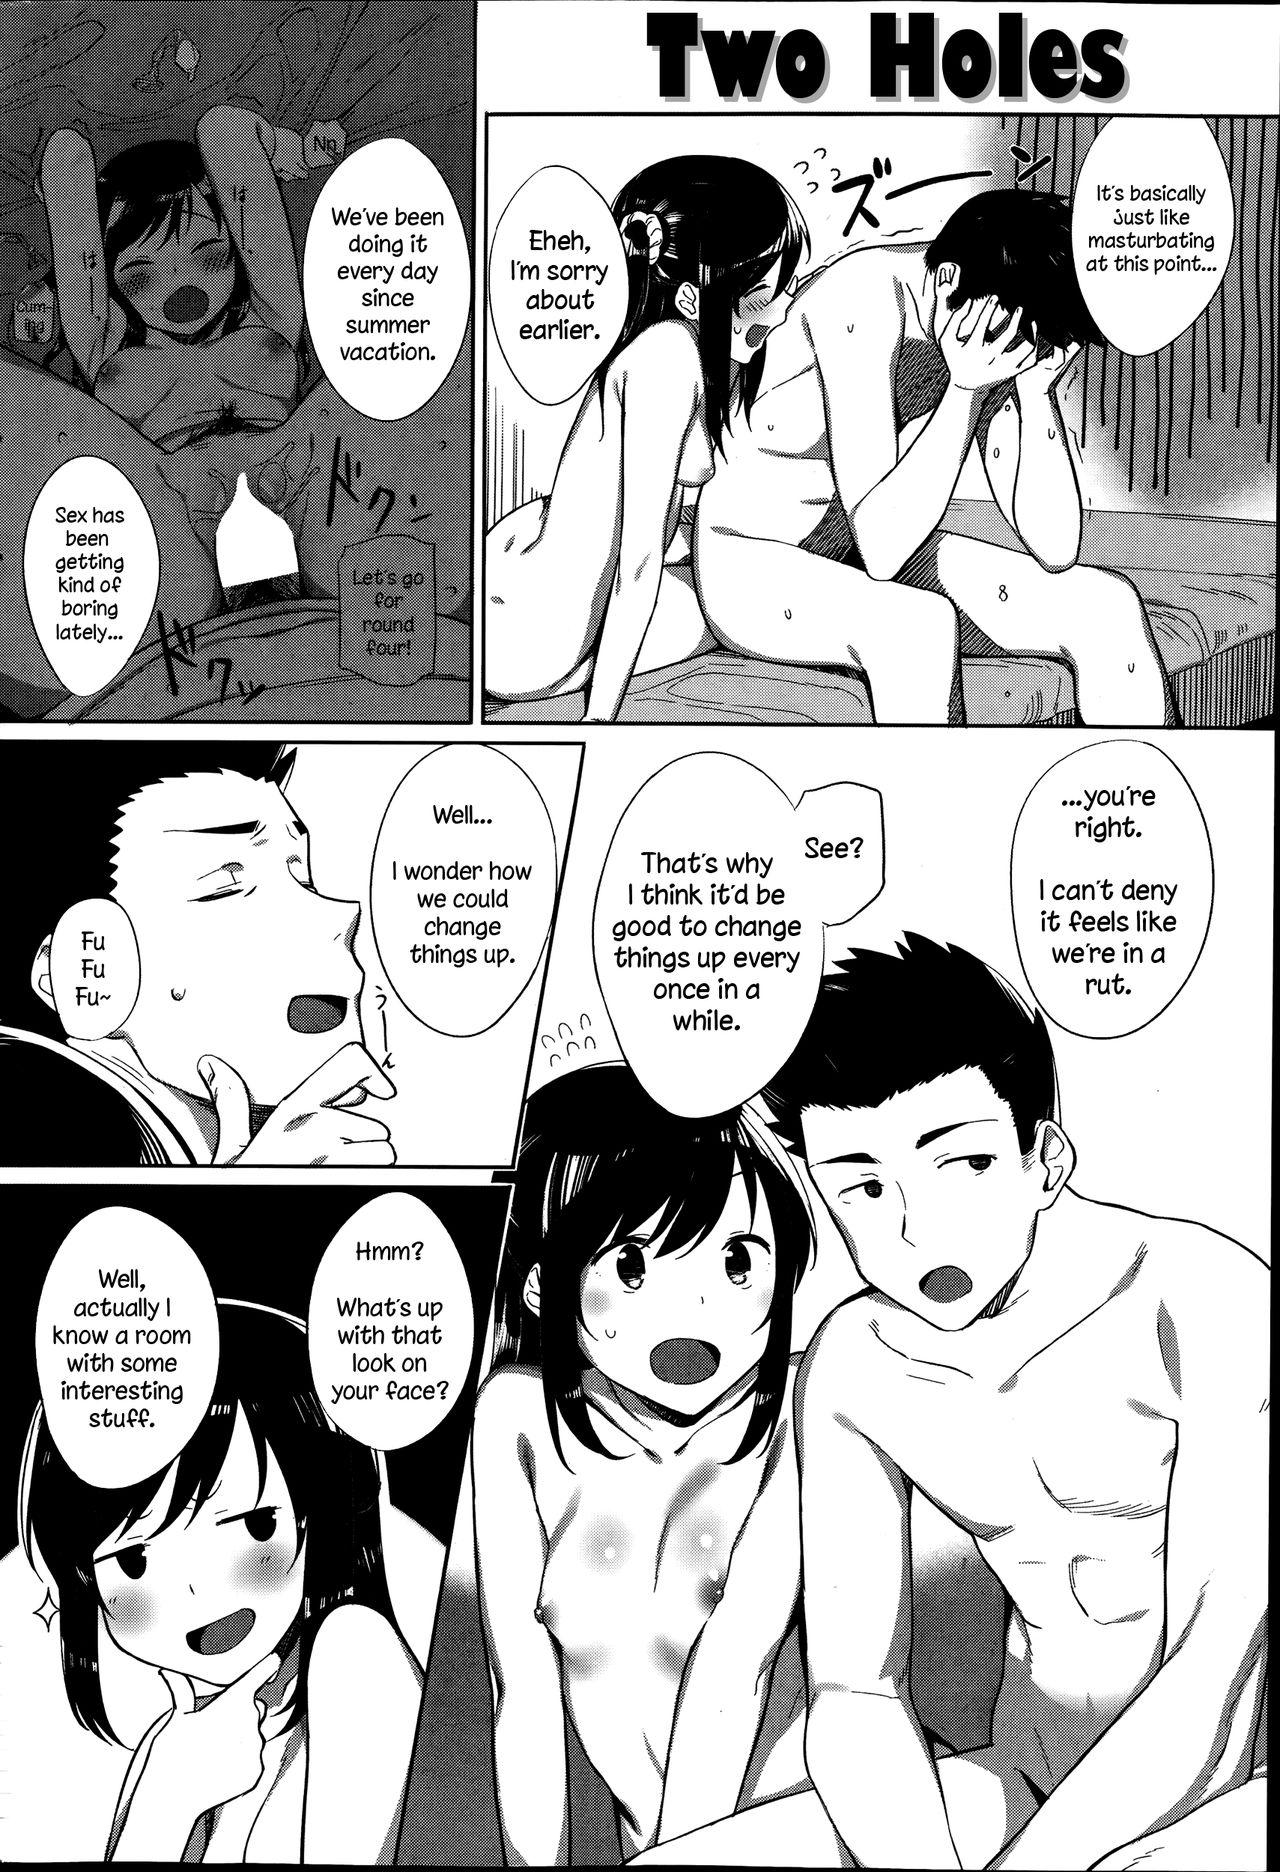 Threesome Ana Futatsu | Two Holes Delicia - Page 2